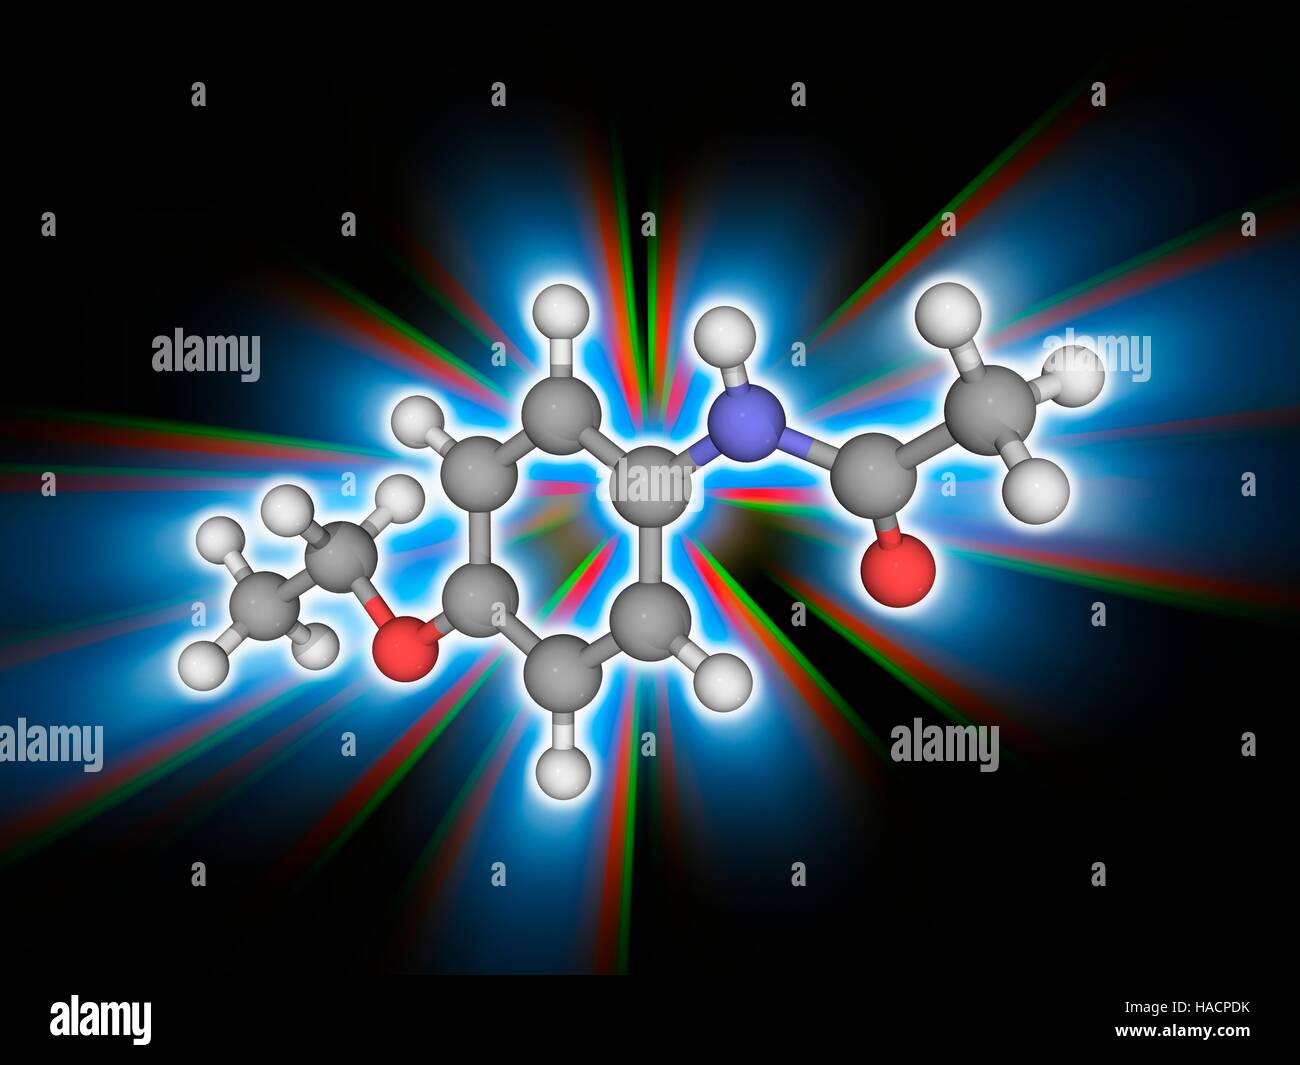 Phenacetin. Molekulares Modell des Analgetikum Phenacetin (C10. H13. N.O2). Dieser Konsum dieser Droge ist wegen seiner Nebenwirkungen zurückgegangen. Atome als Kugeln dargestellt werden und sind farblich gekennzeichnet: Kohlenstoff (grau), Wasserstoff (weiß), Stickstoff (blau) und Sauerstoff (rot). Abbildung. Stockfoto